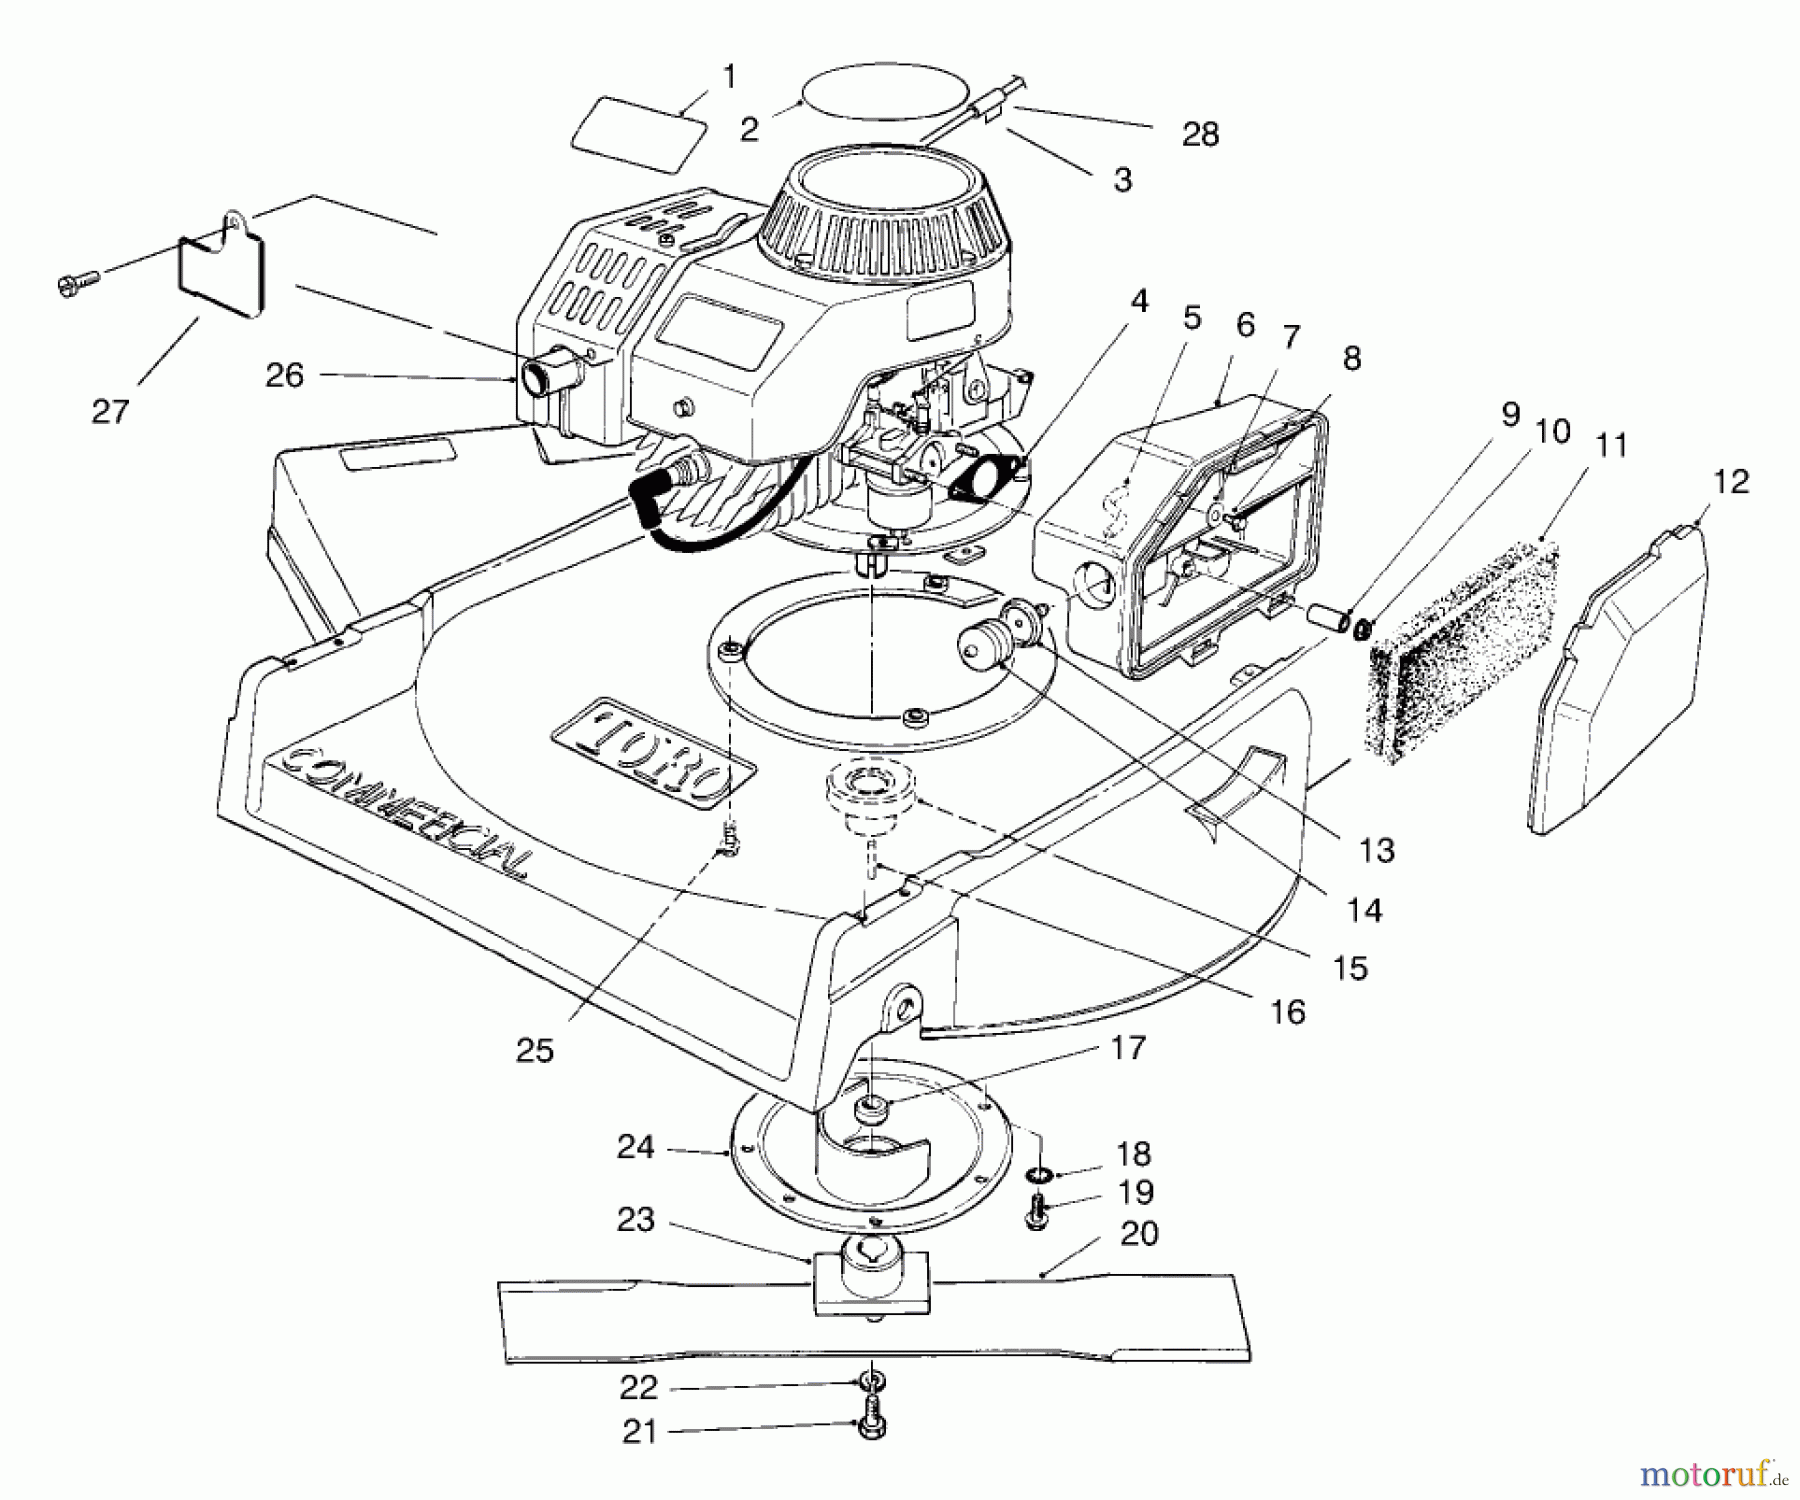  Toro Neu Mowers, Walk-Behind Seite 2 22701B - Toro Lawnmower, 1996 (69000001-69999999) ENGINE ASSEMBLY